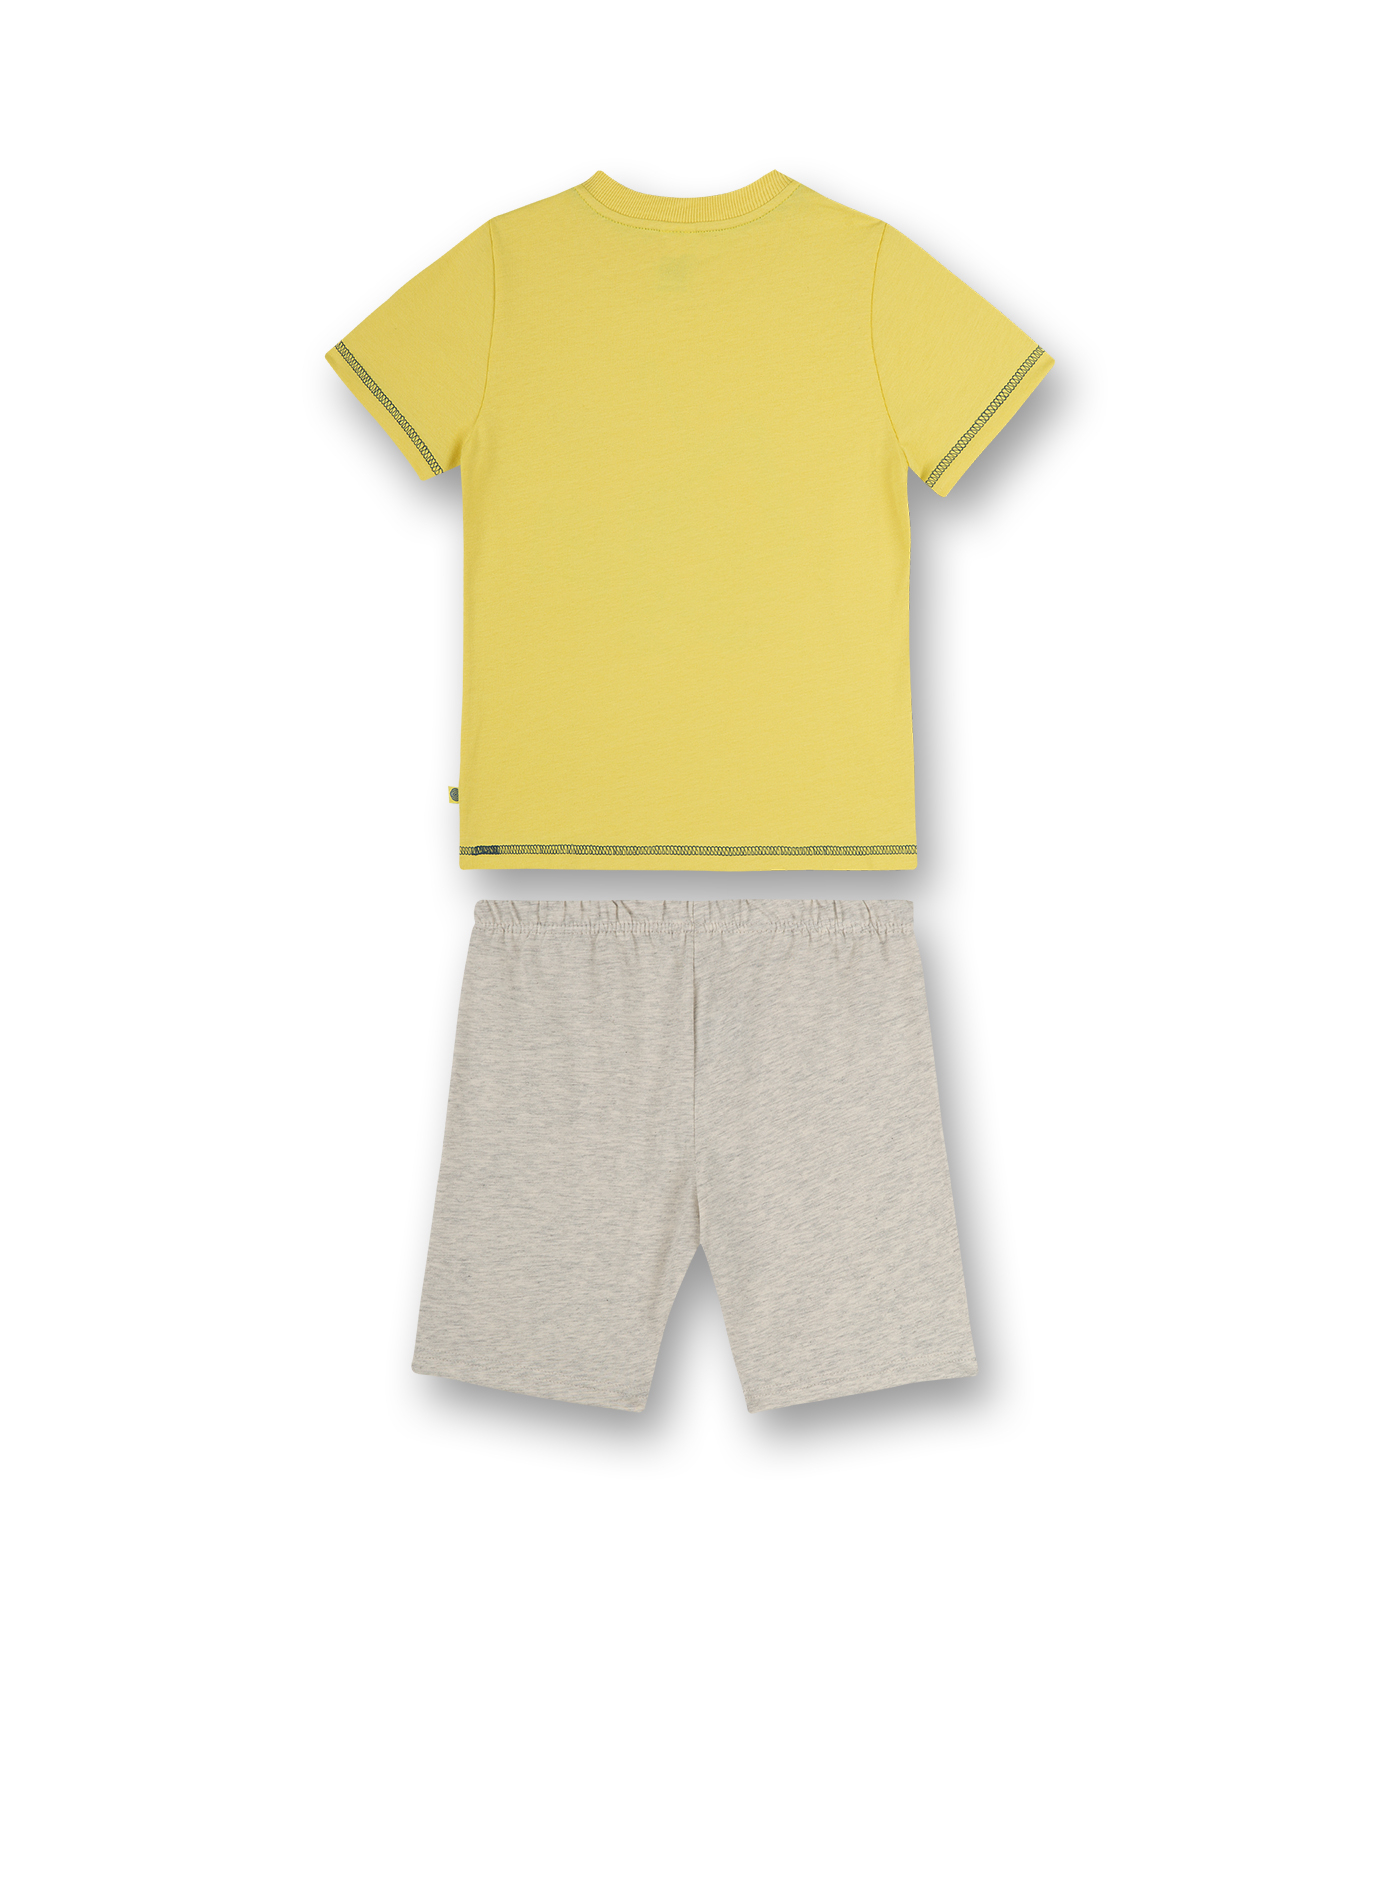 Jungen-Schlafanzug kurz Gelb Building